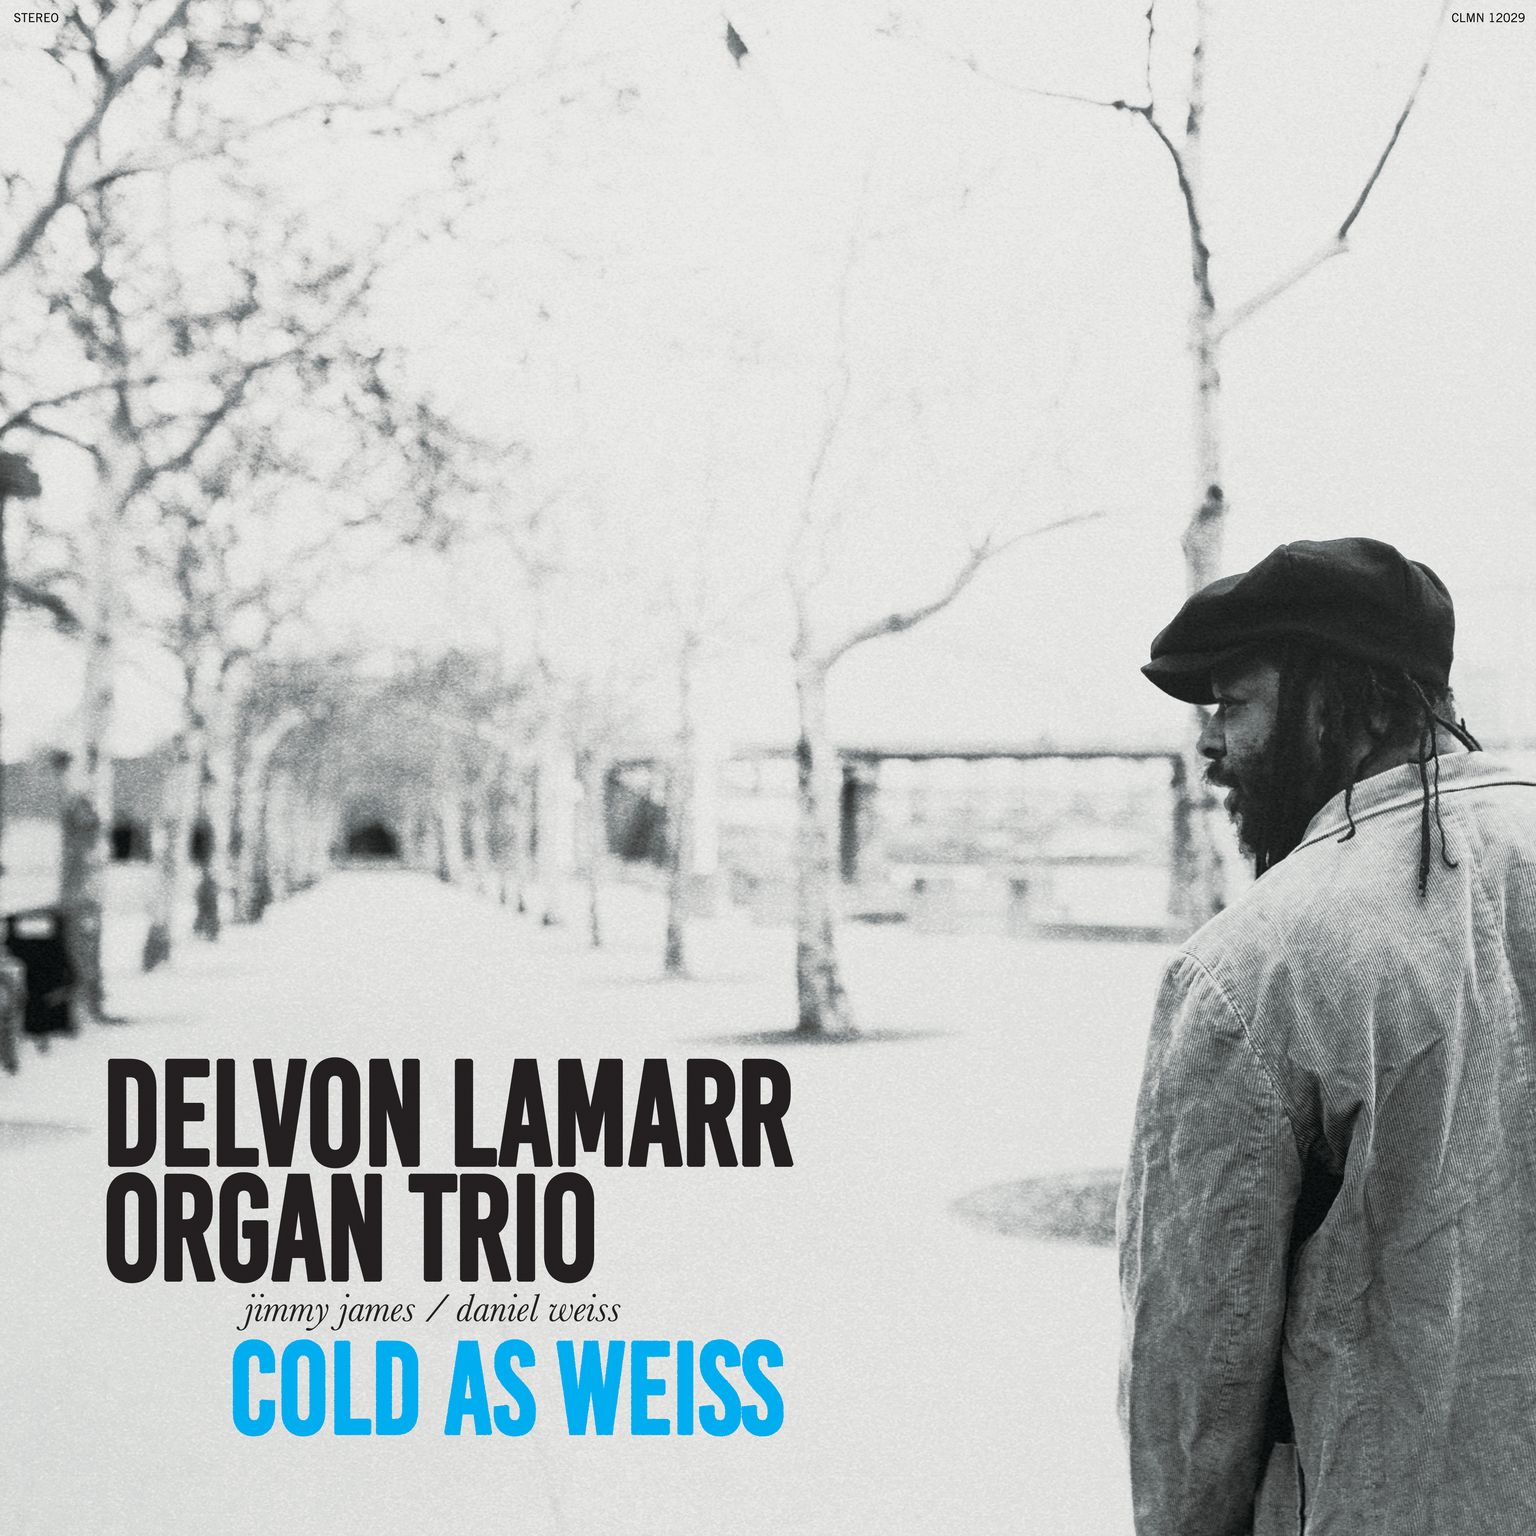 Delvon Lamarr Organ Trio Announce New Album, Share Lead Single